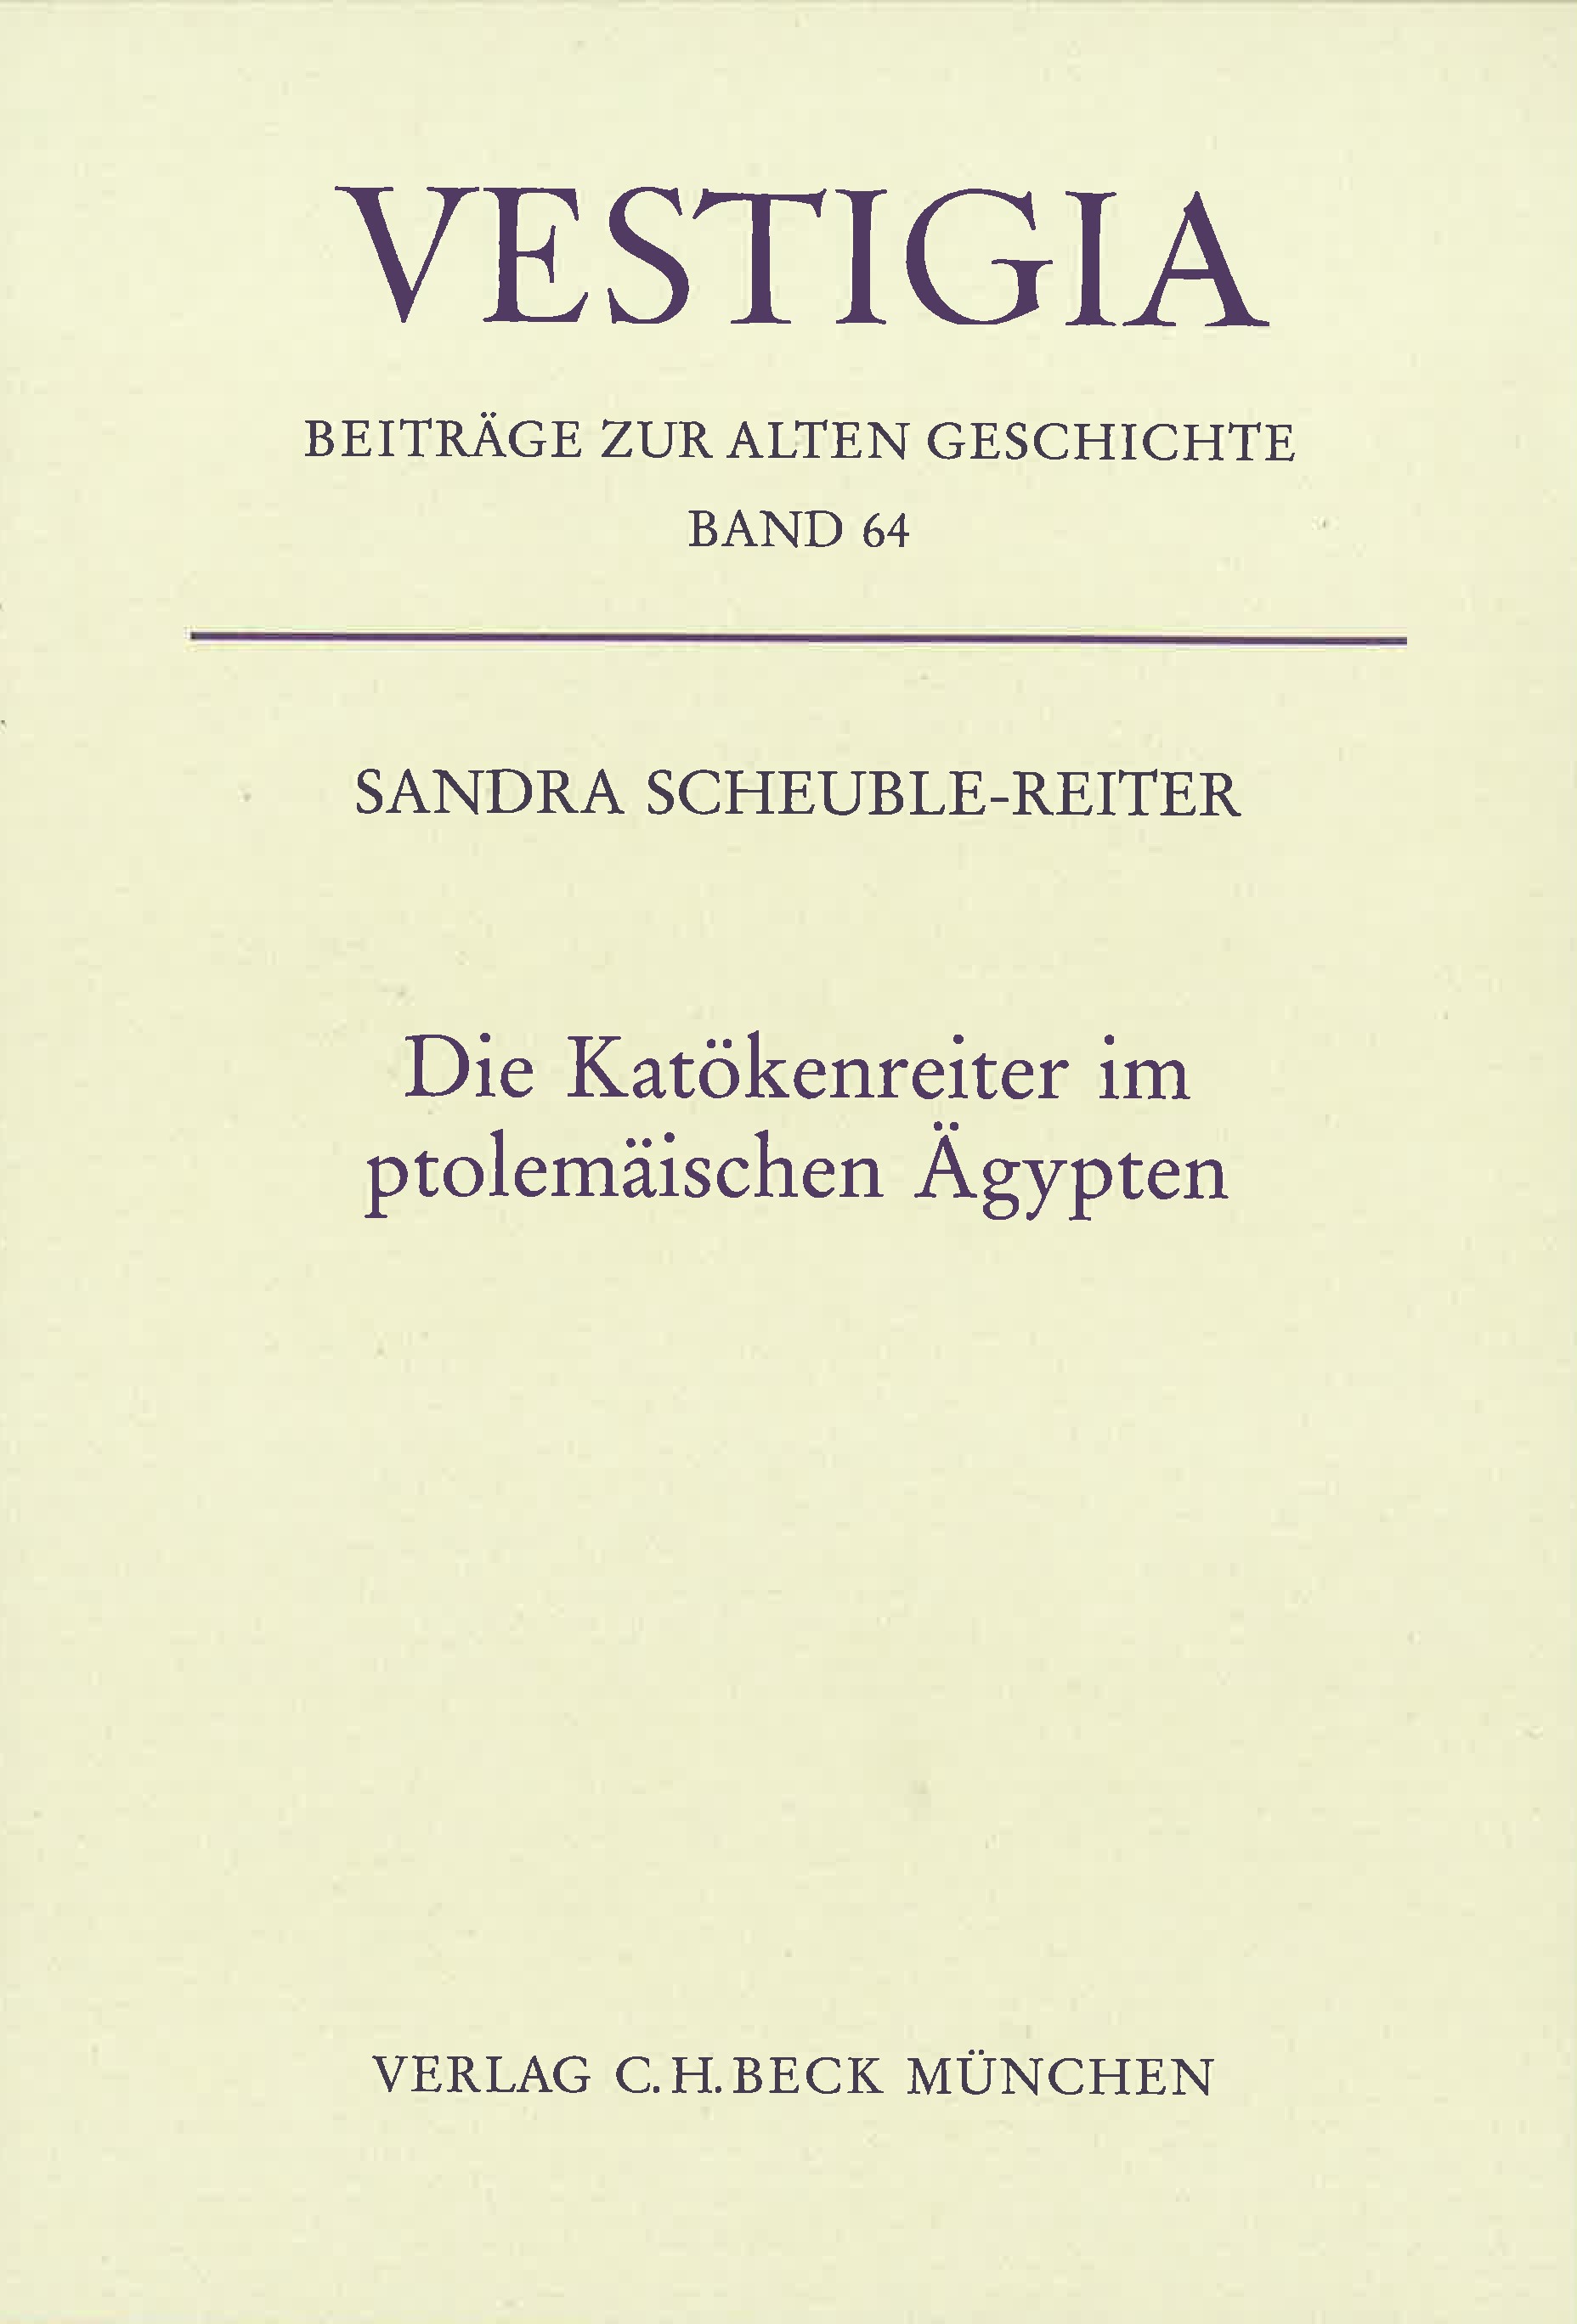 Cover: Scheuble-Reiter, Sandra, Die Katökenreiter im ptolemäischen Ägypten